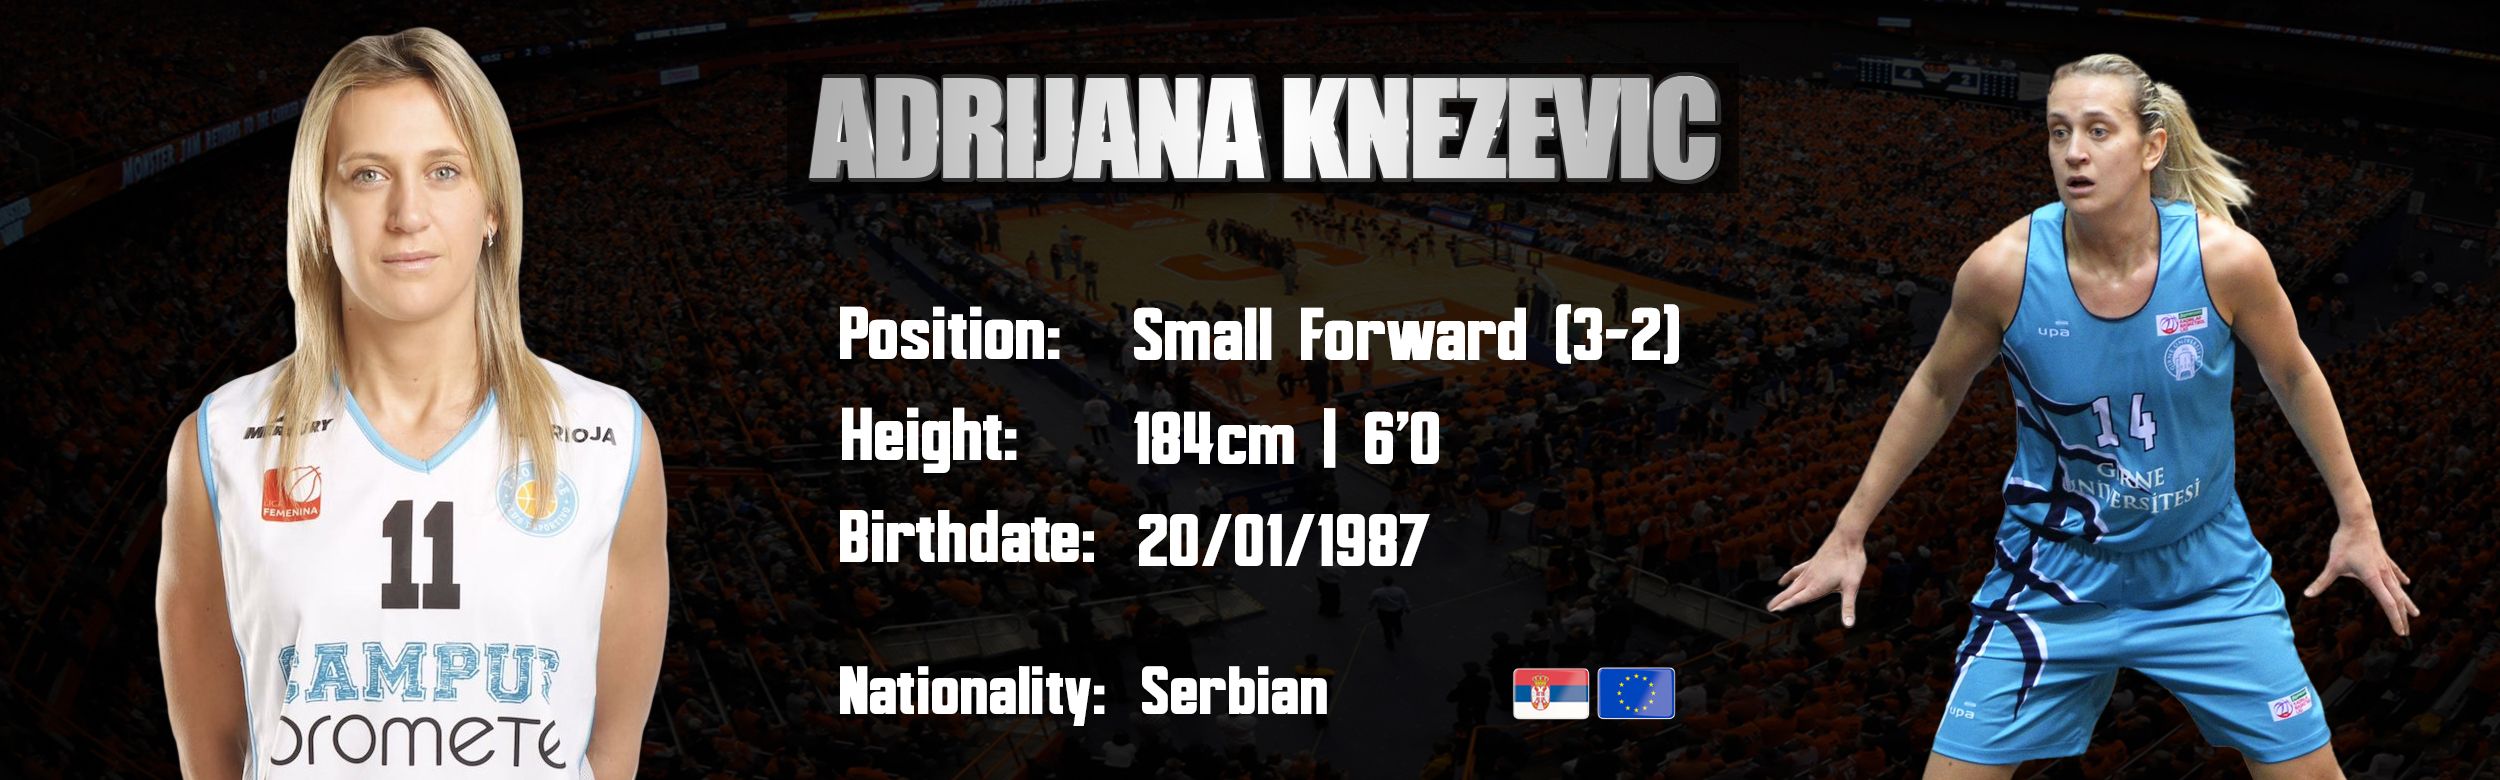 Adrijana Knezevic